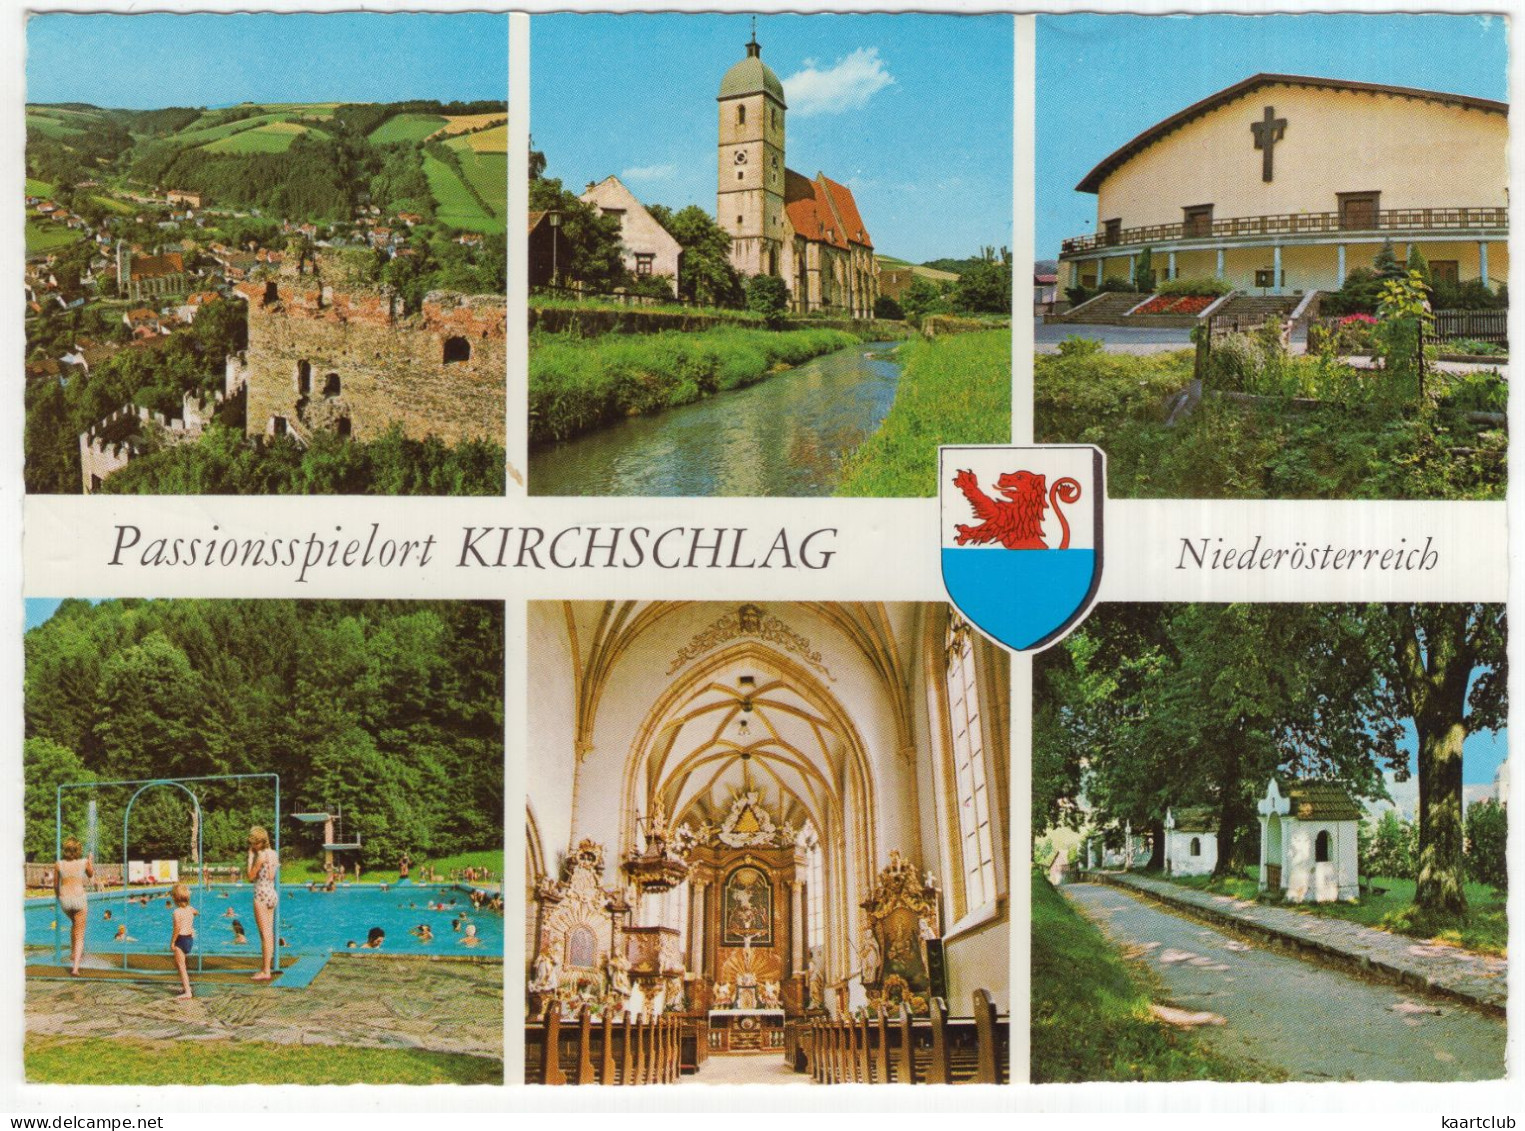 Passionsspielort Kirchschlag - Ort, Pfarrkirche, Passionsspielhaus, Schwimmbad, Kirche - (NÖ, Österreich/Austria) - Wiener Neustadt